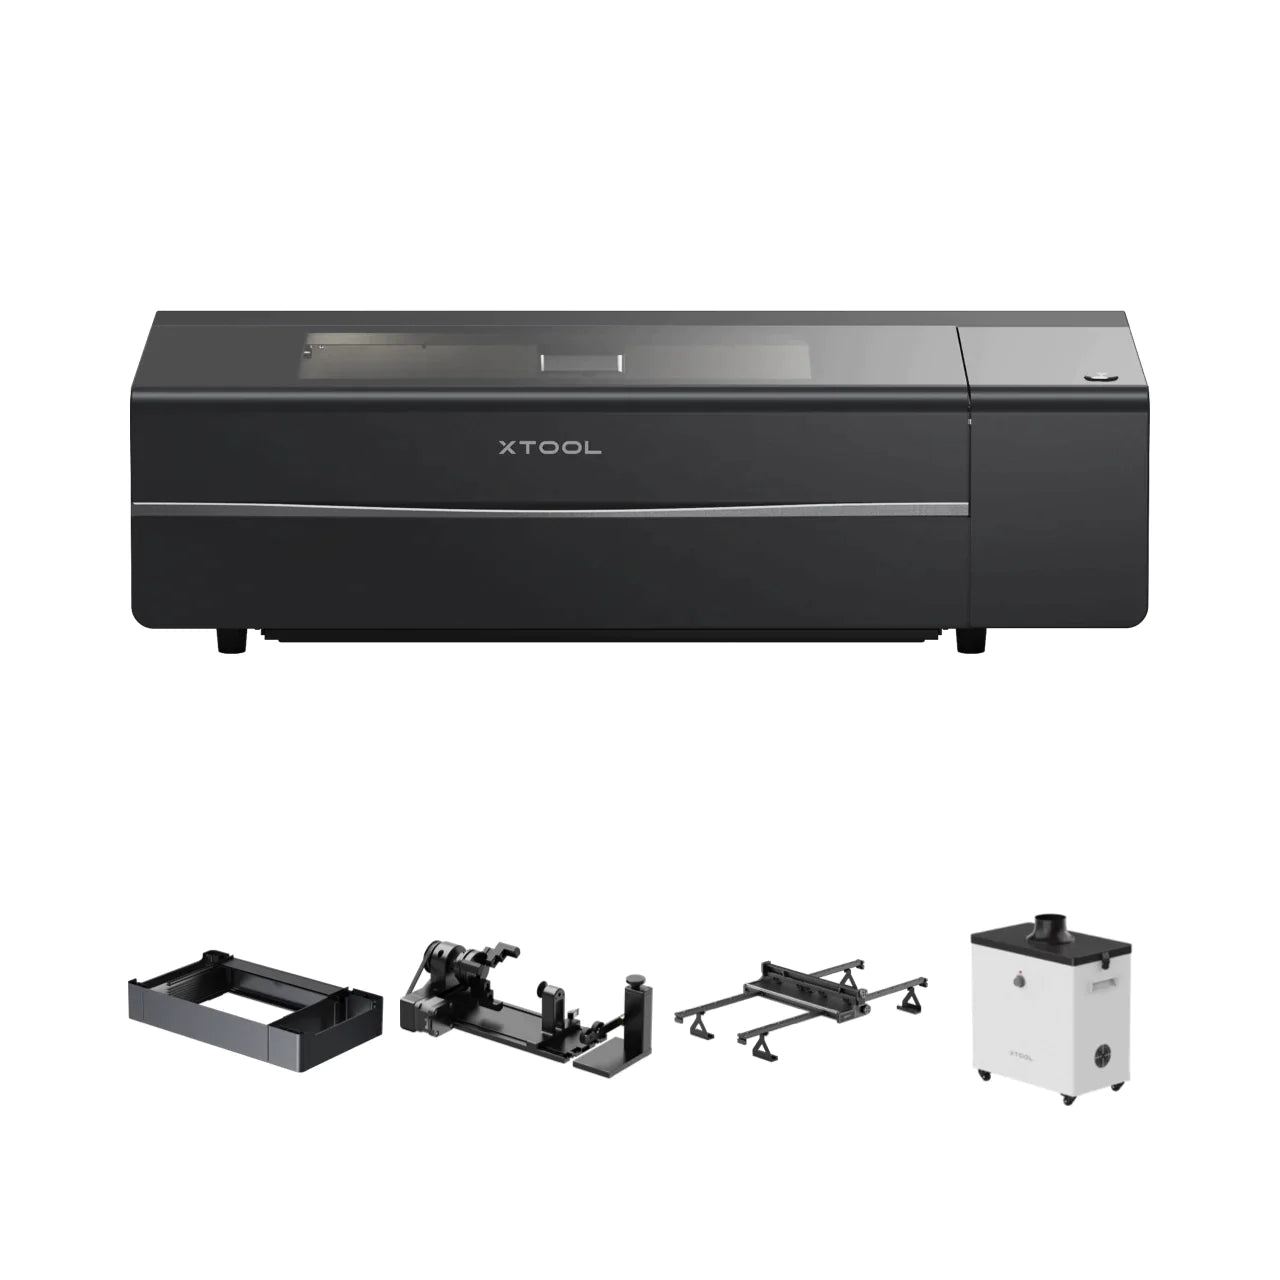 【Final payment】xTool P2 Versatile and Smart Desktop 55W CO2 Laser Cutter